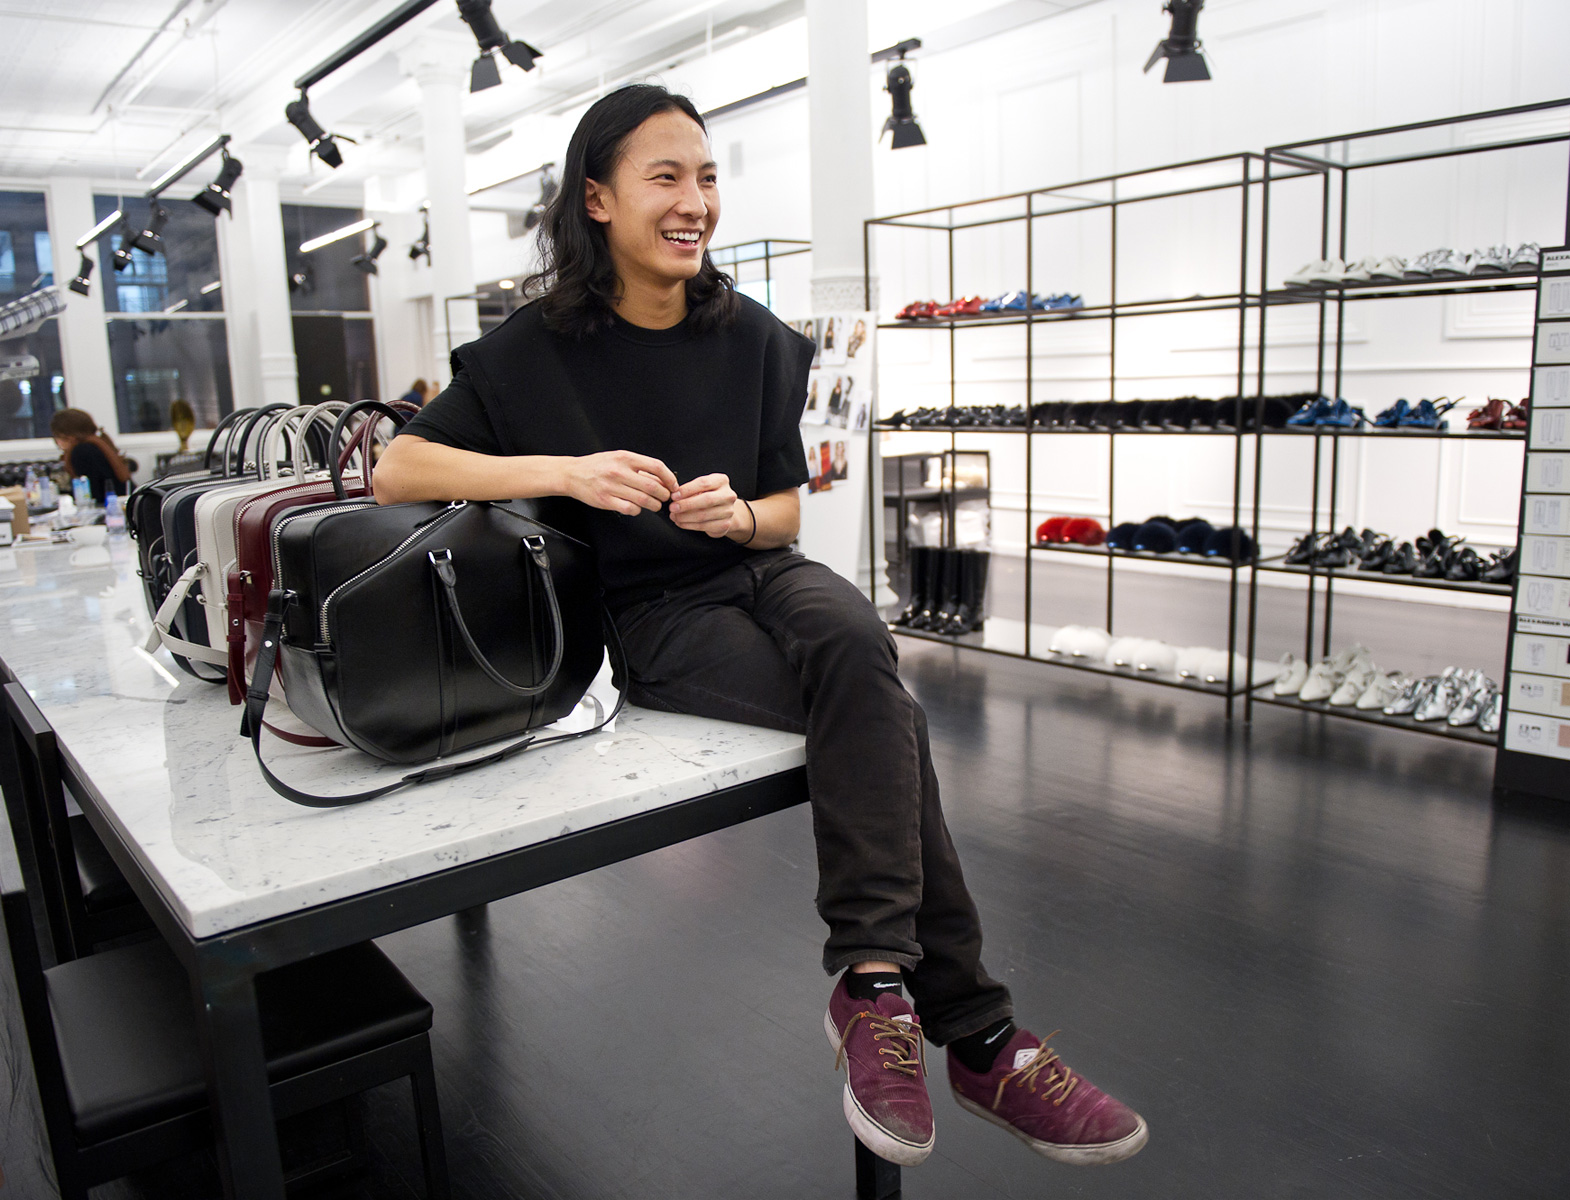 Alexander Wang Makes His Balenciaga Debut - The Kit